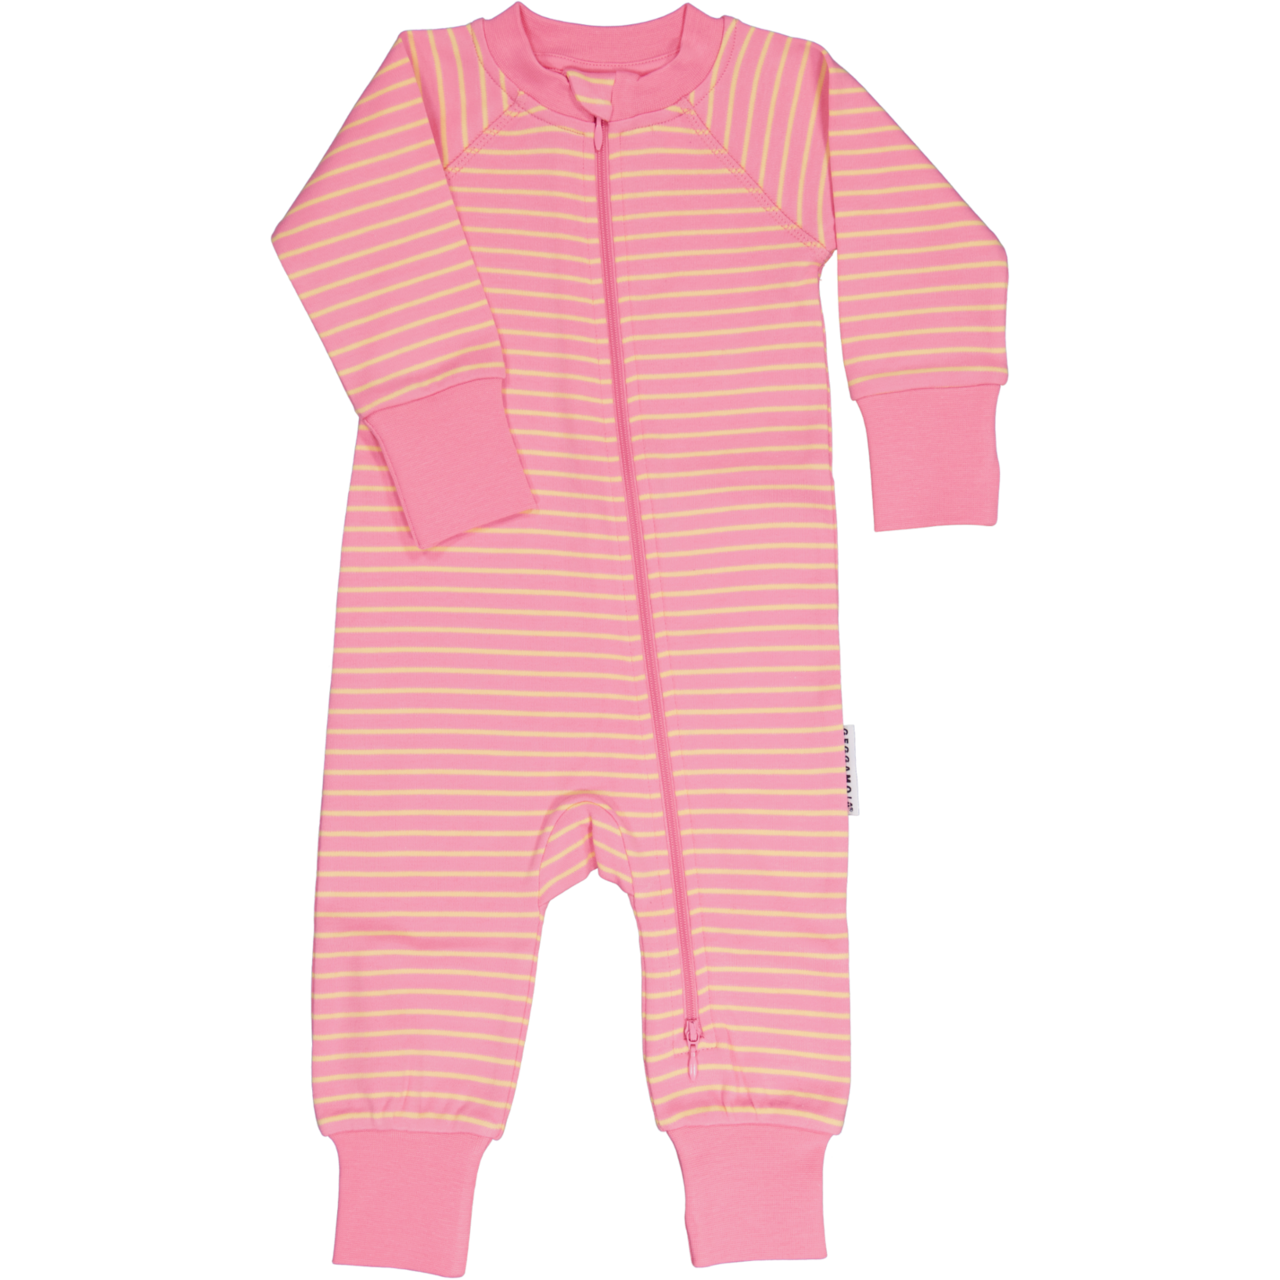 Kaksiosainen pyjama vaaleanpunainen/keltainen